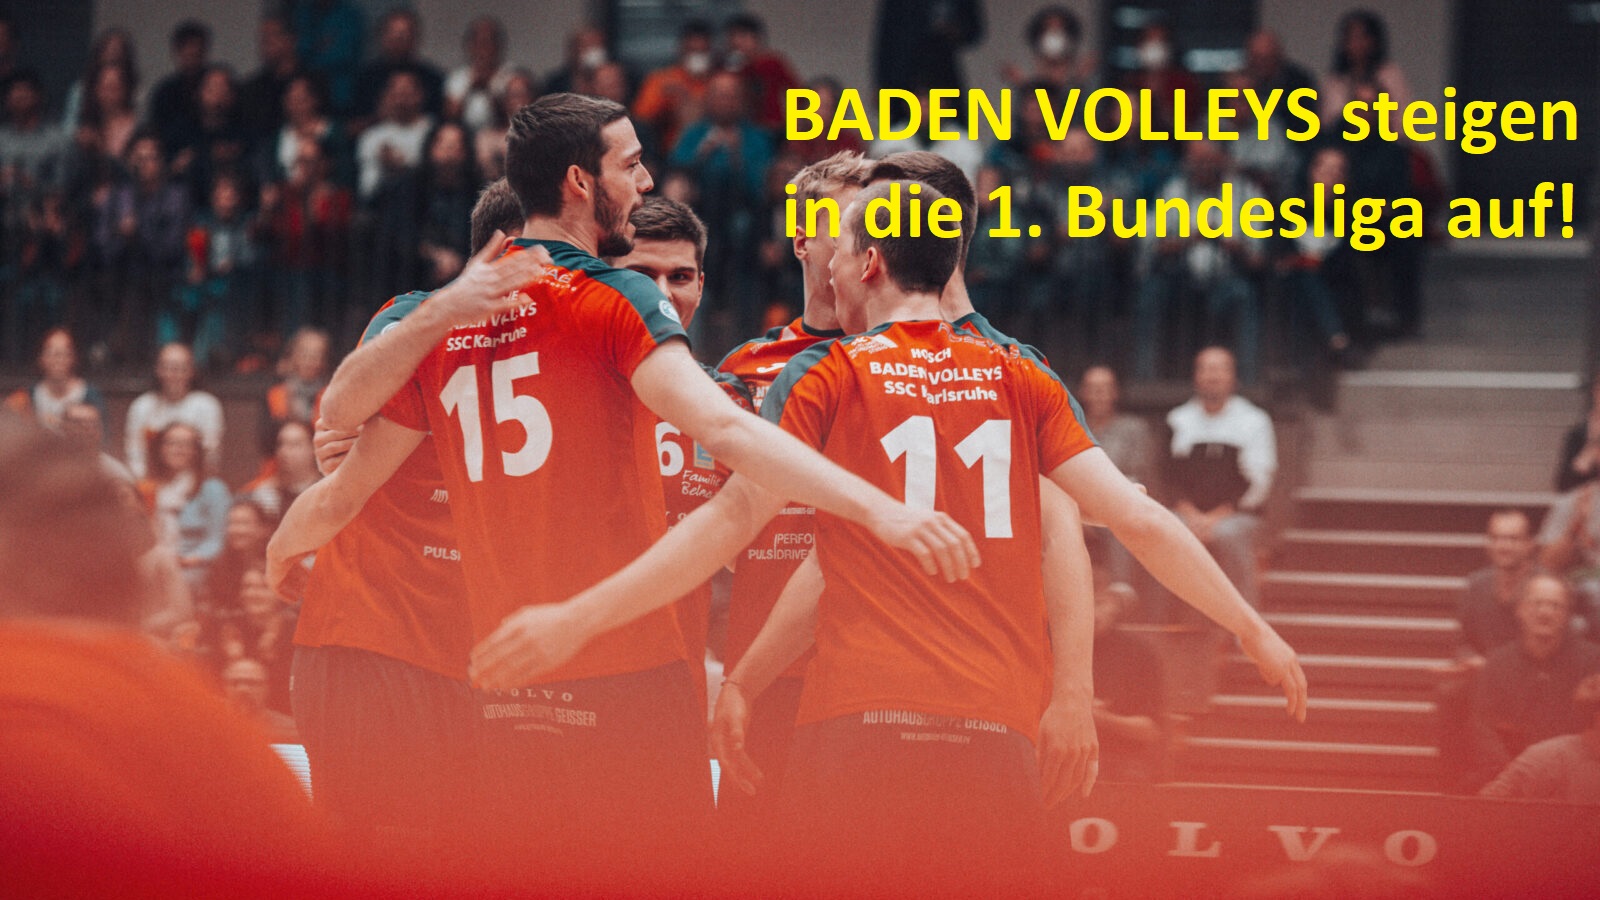 SSC_Baden_Volleys_Aufstieg